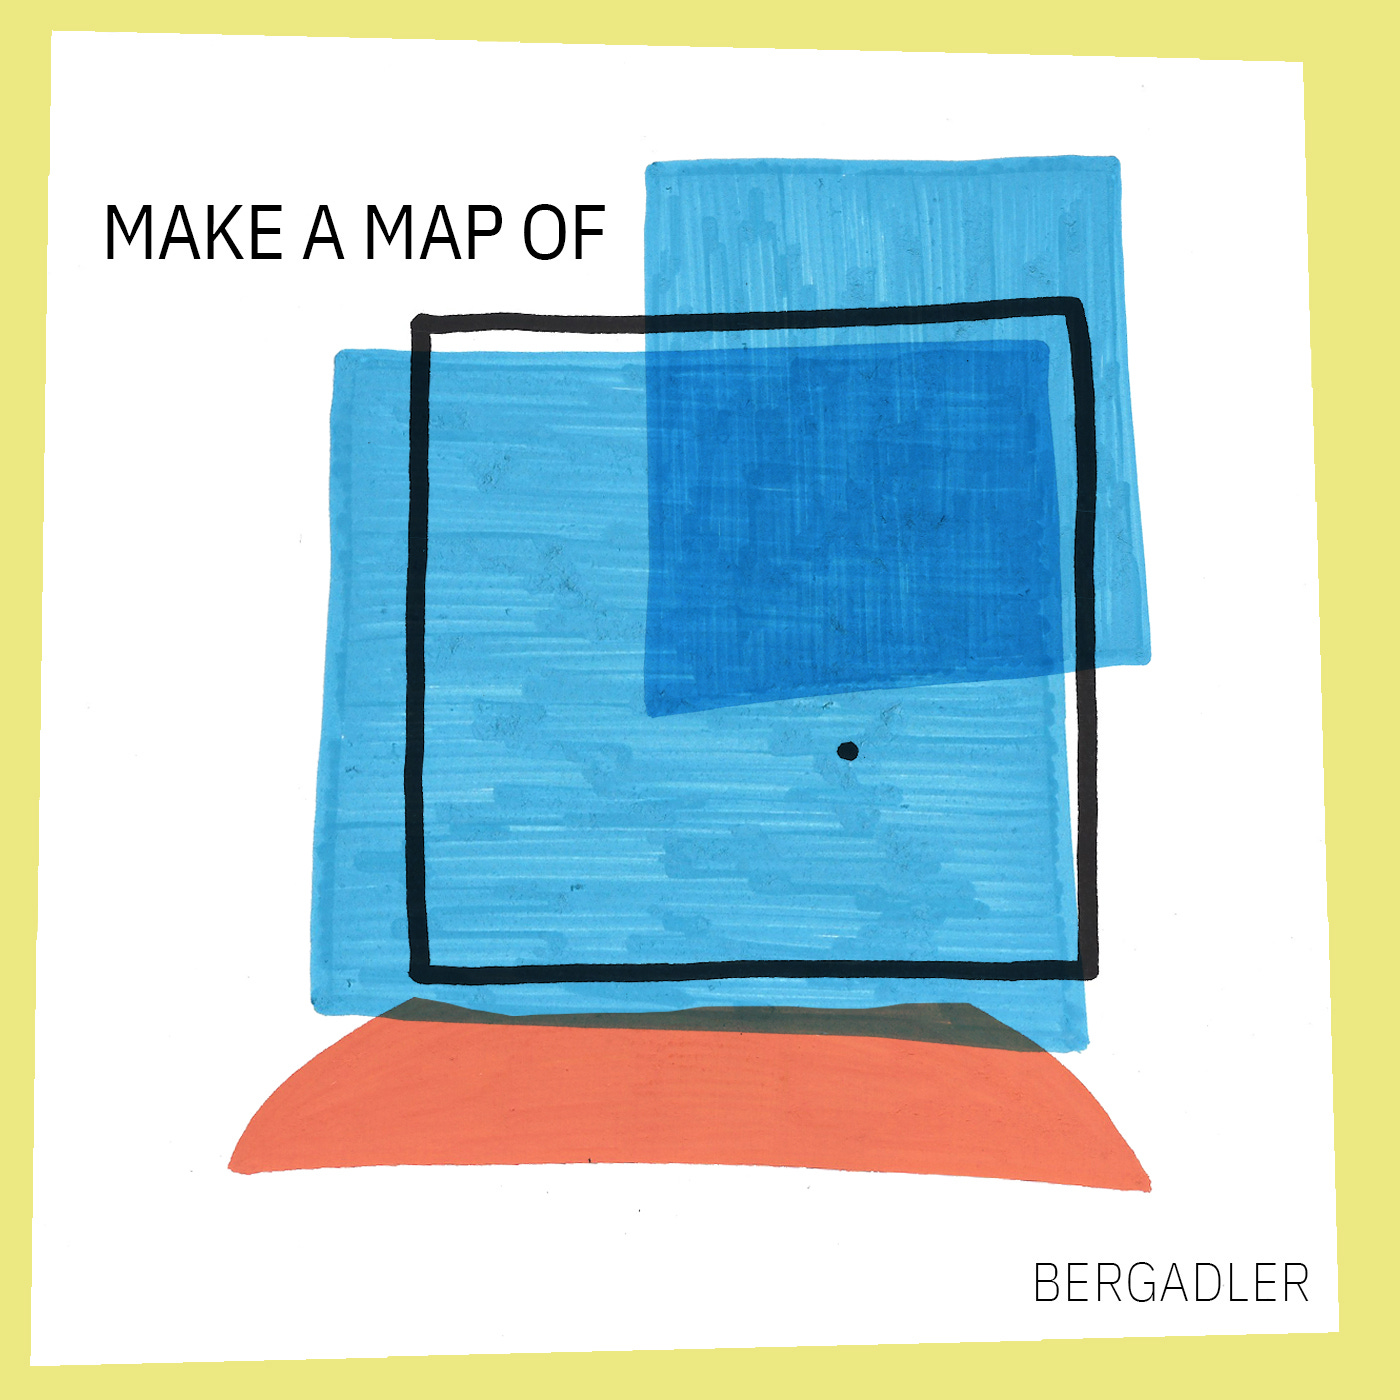 Album art: Make a map of by Bergadler